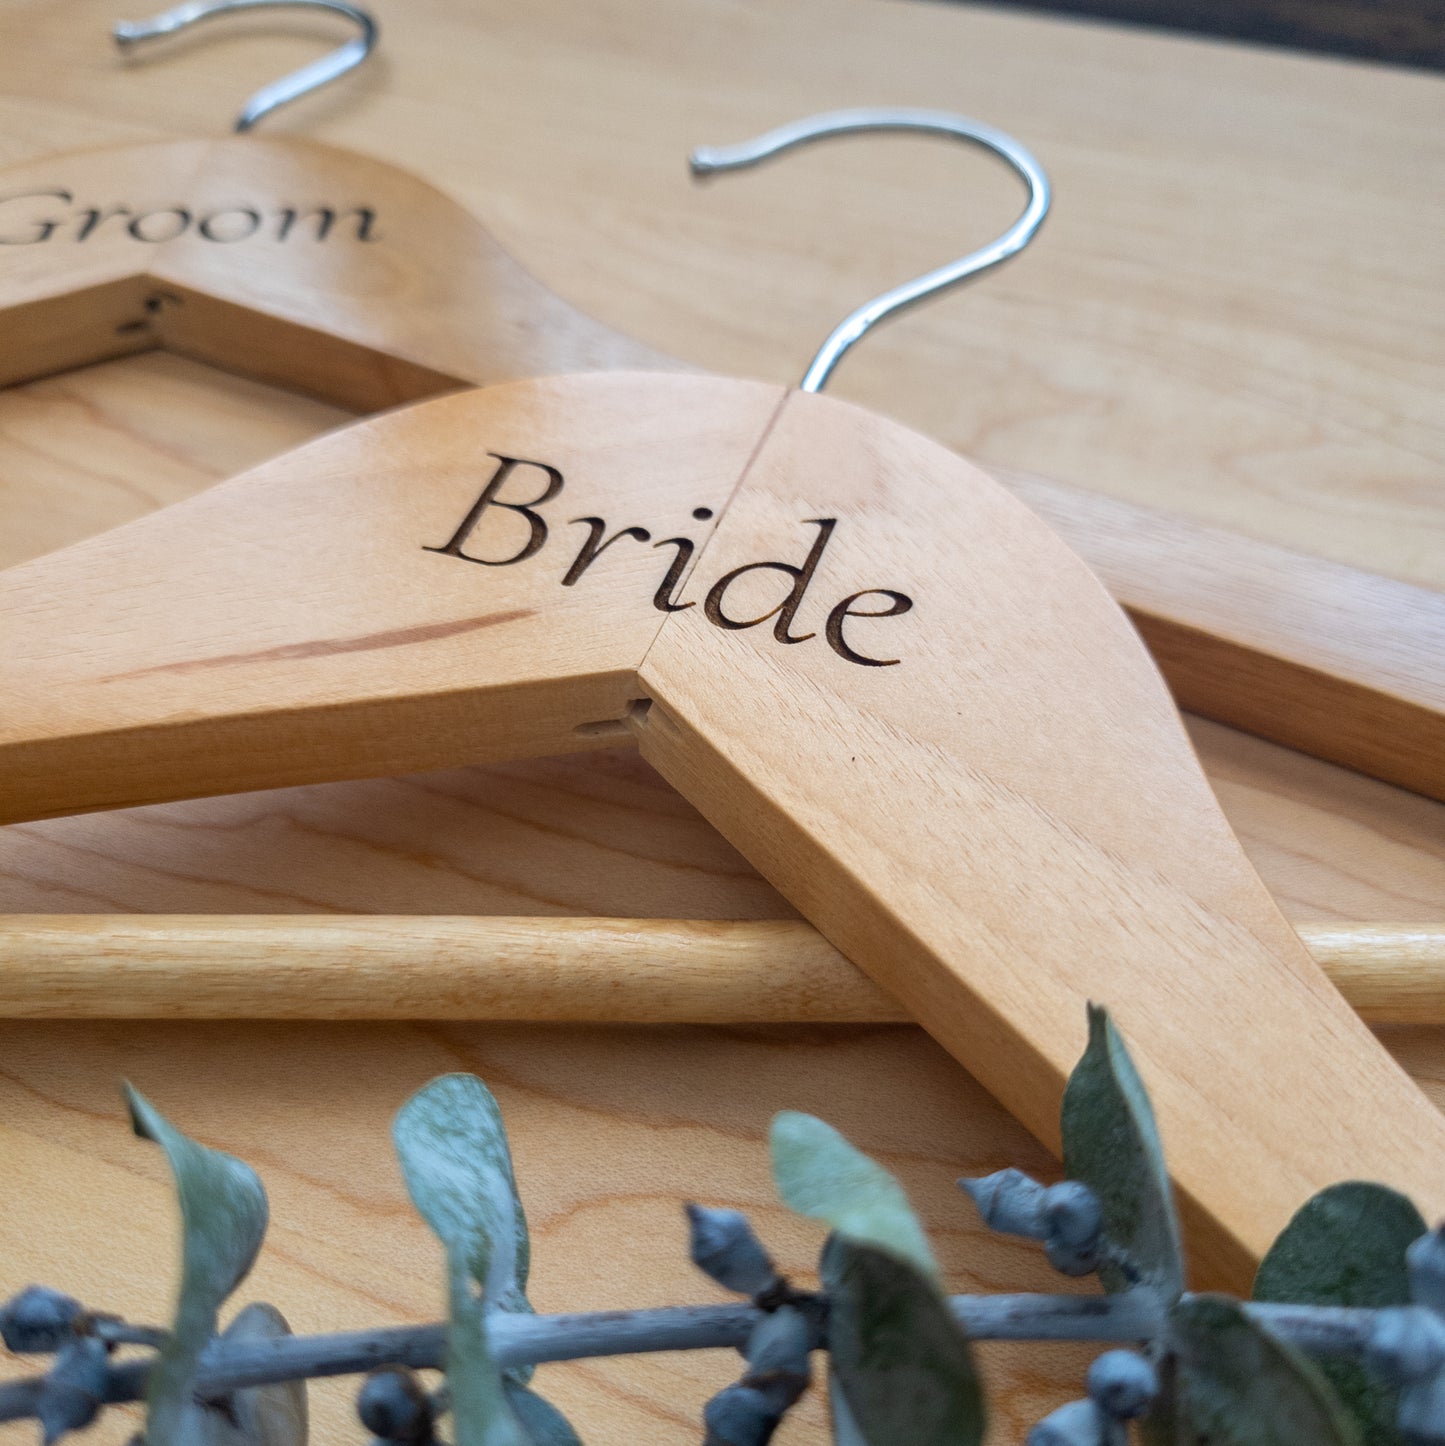 "Bride" Wooden Hanger